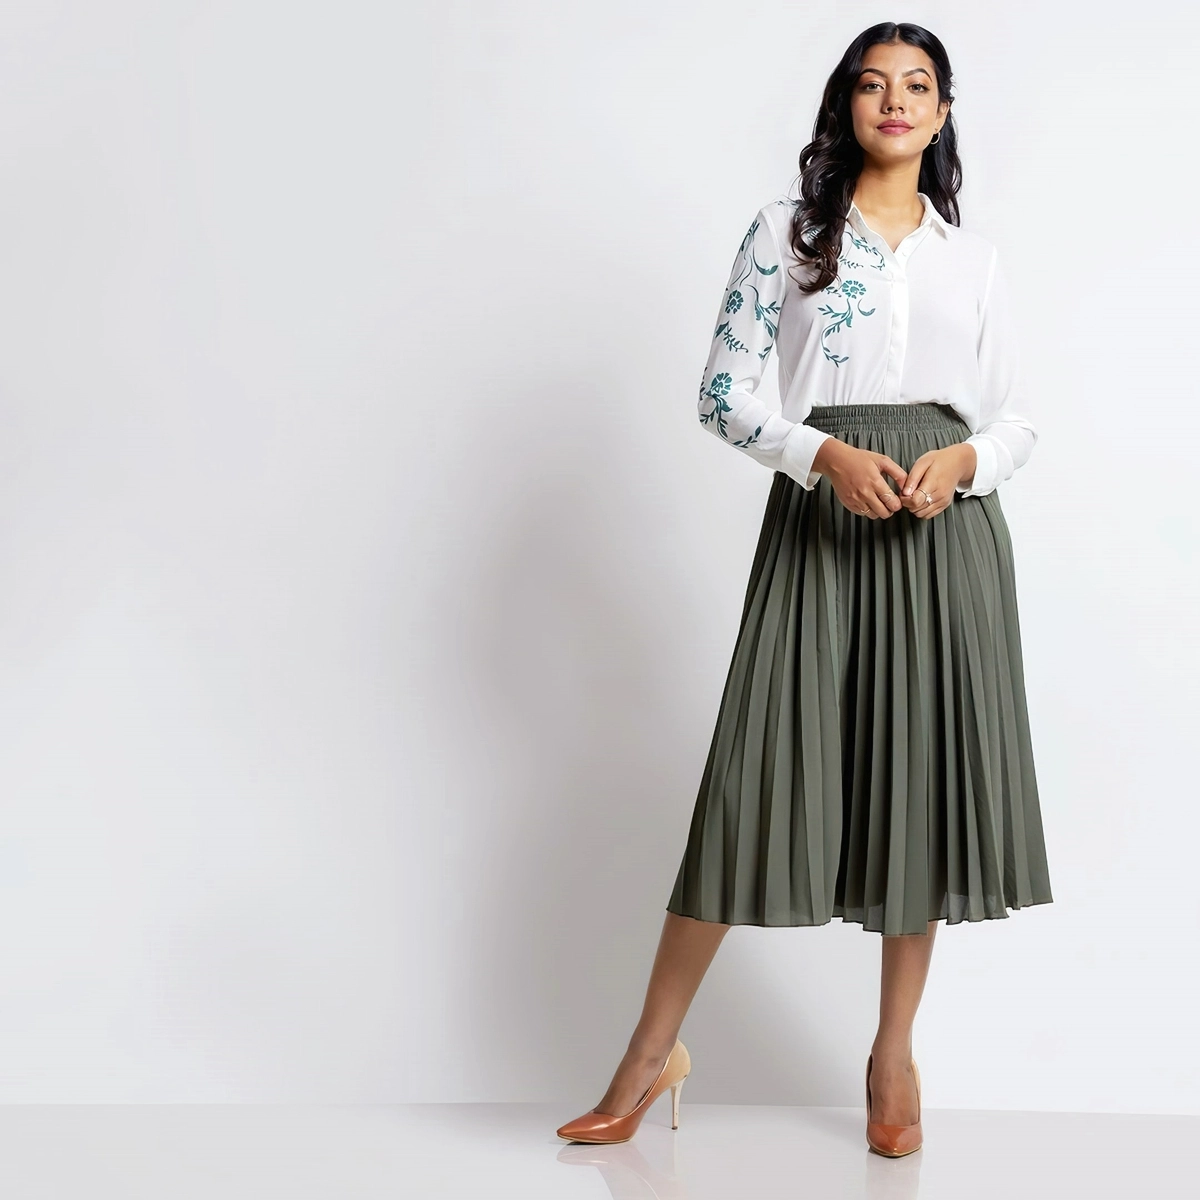 gruener plisseerock mit weissem hemd fashionbugsrilanka